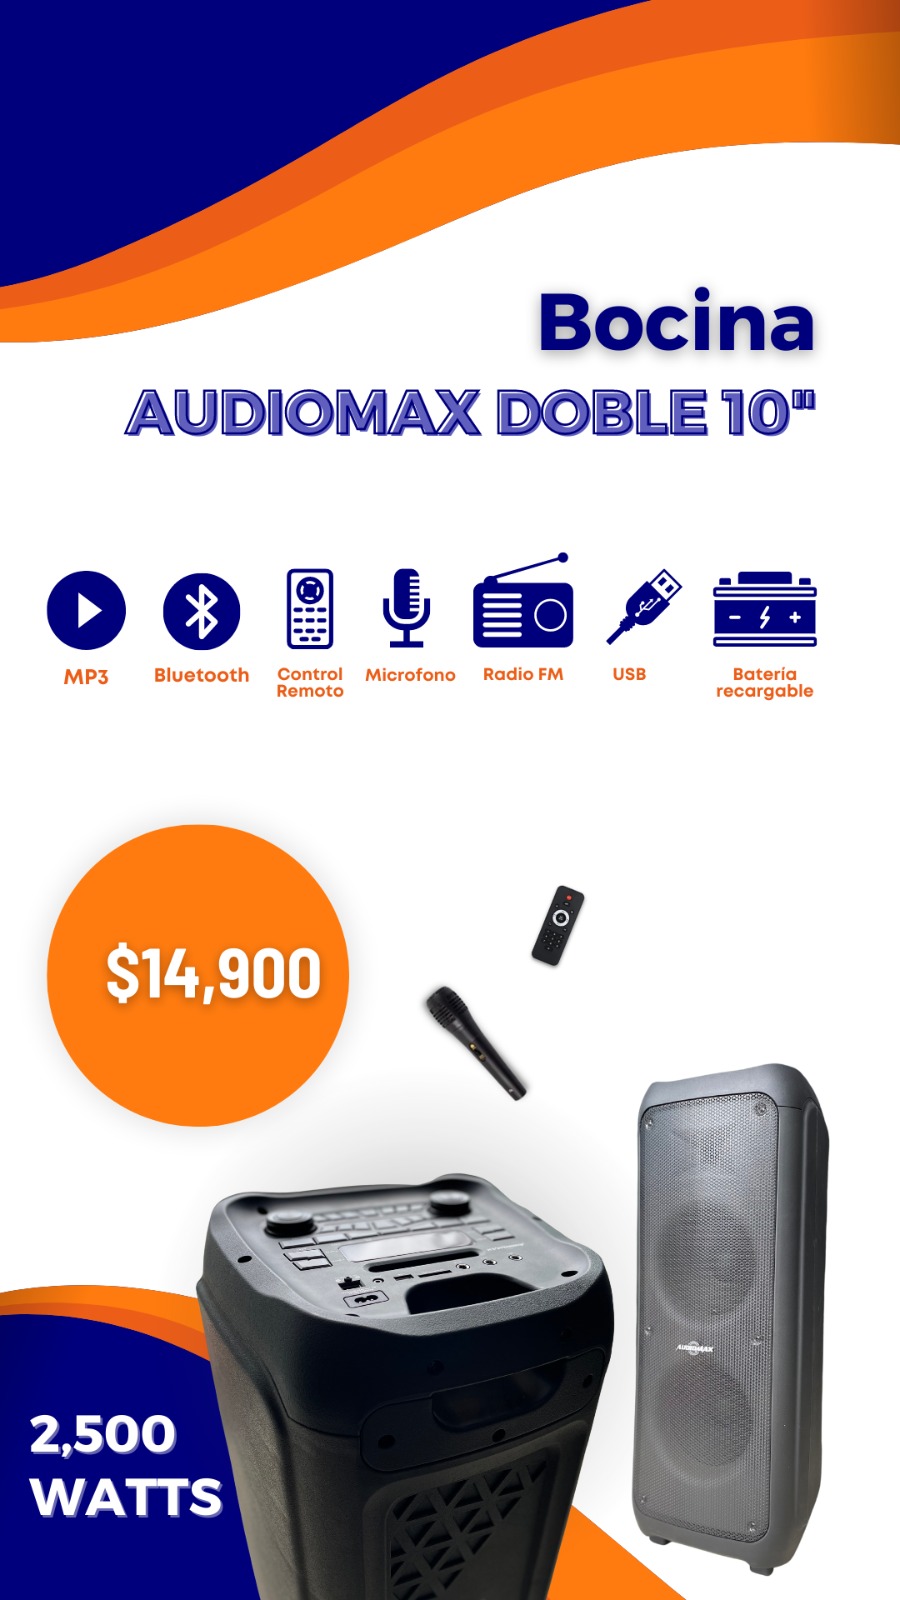 Bocina Audiomax doble 10 Foto 7185665-1.jpg